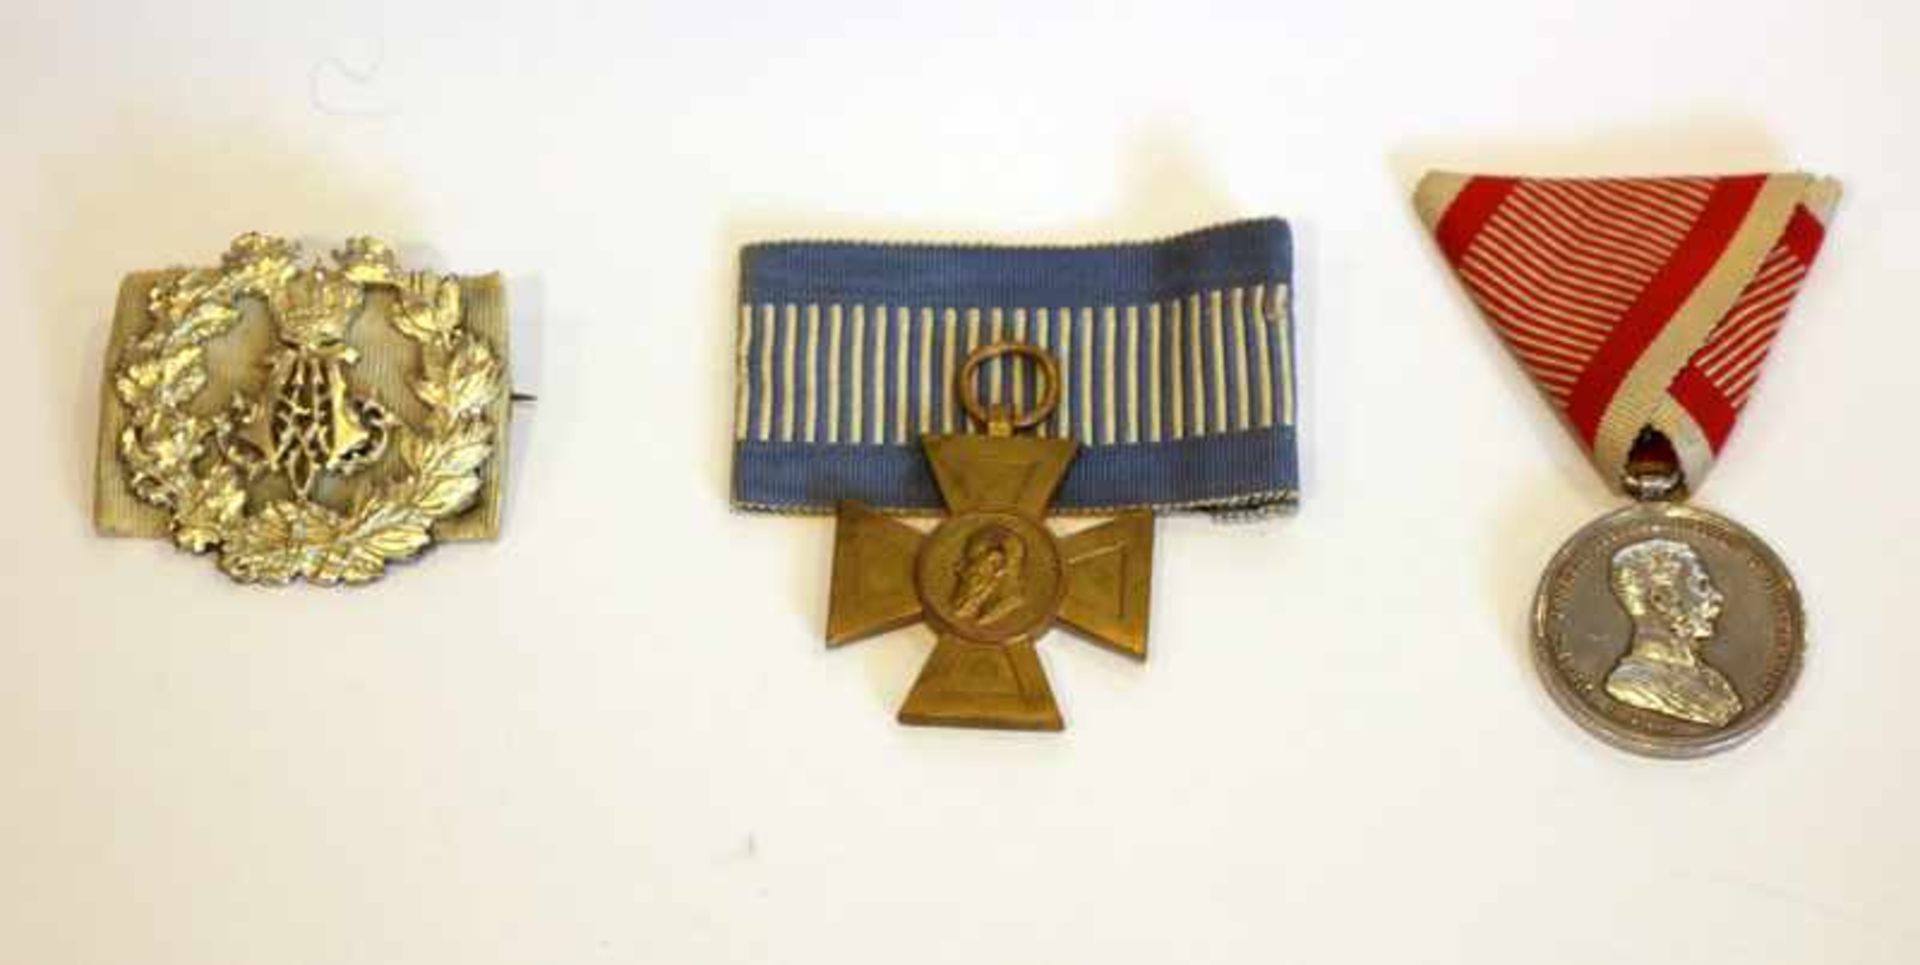 Luitpold Kreuz am Band und Schnalle mit Eichenlaub und gekröntem A, sowie Österreich Orden für